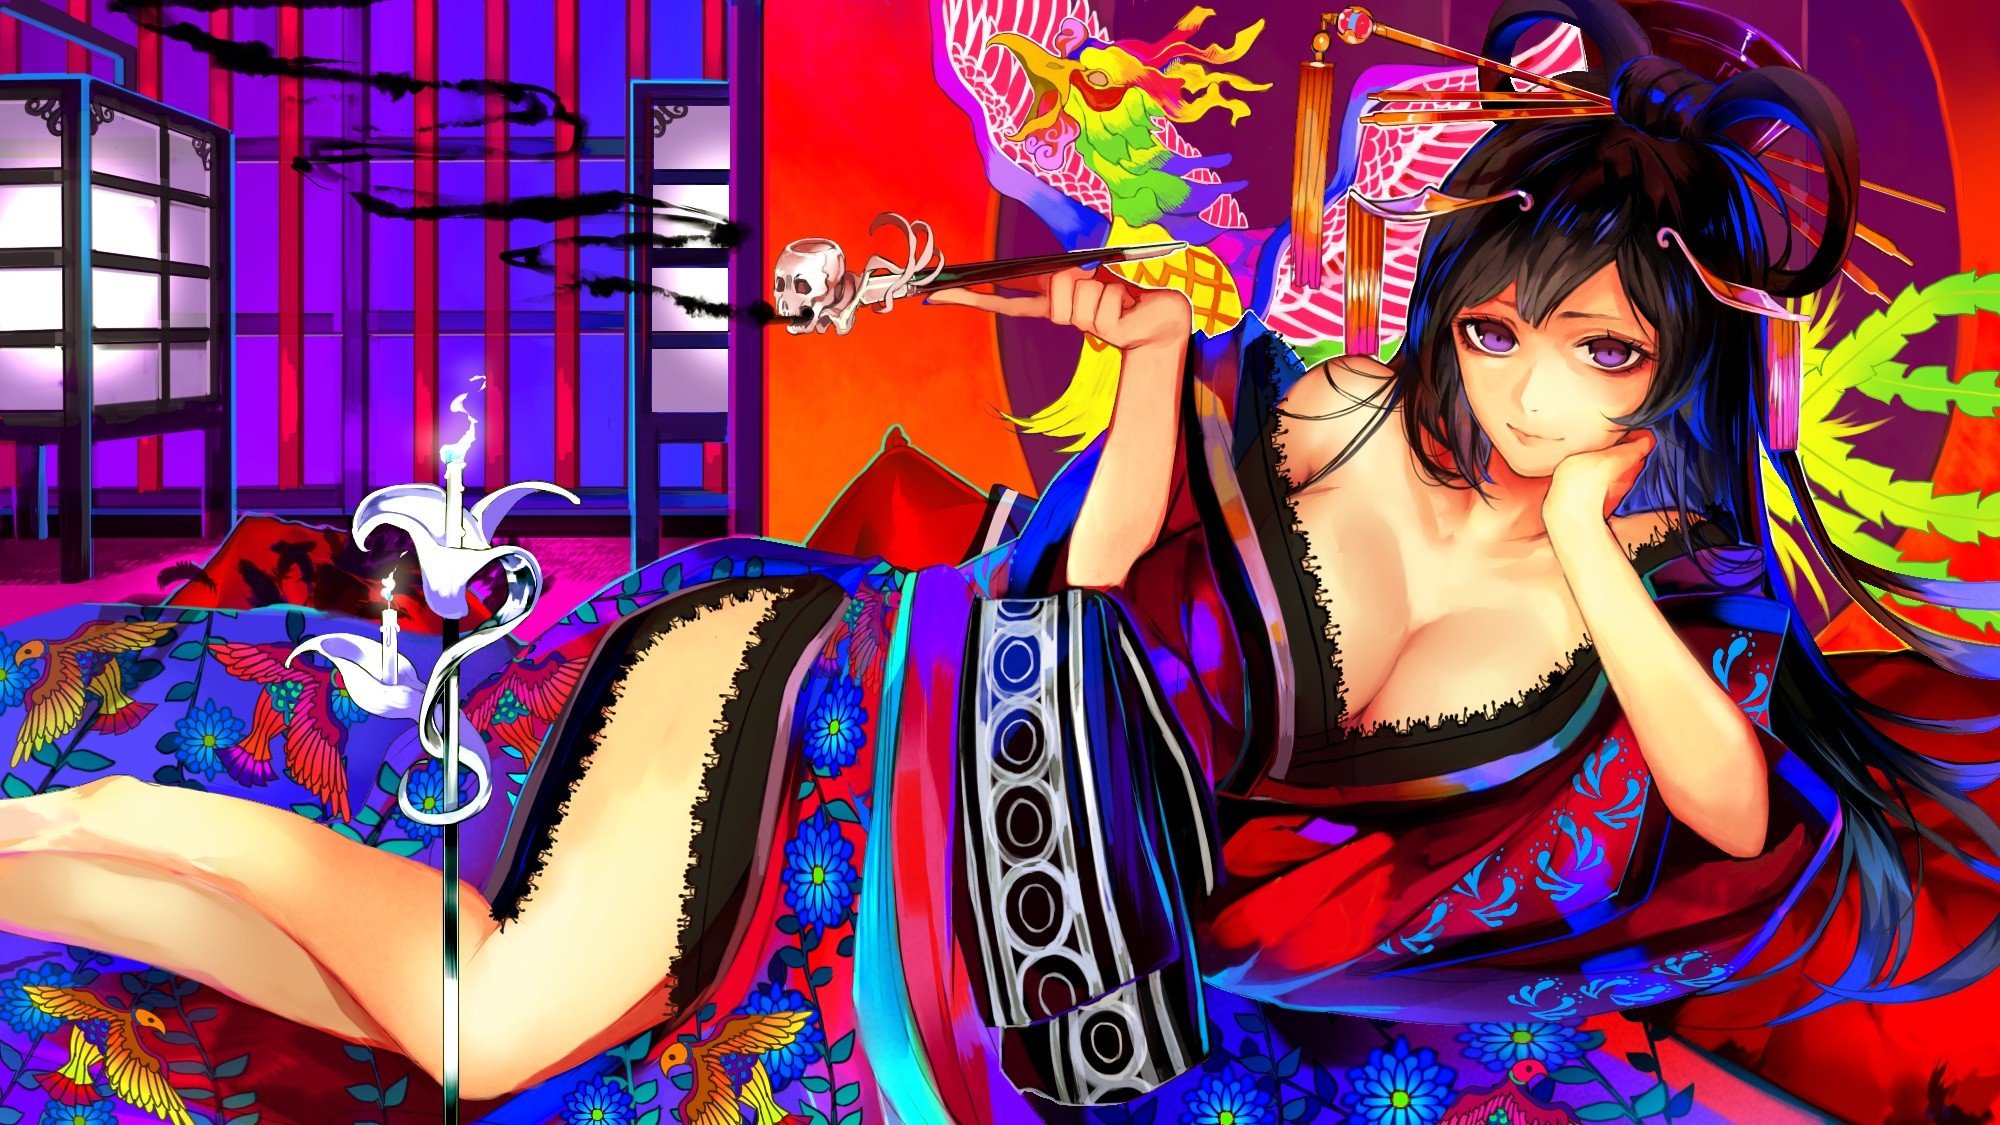 kimono, Anime girls, Colorful, Original characters Wallpaper